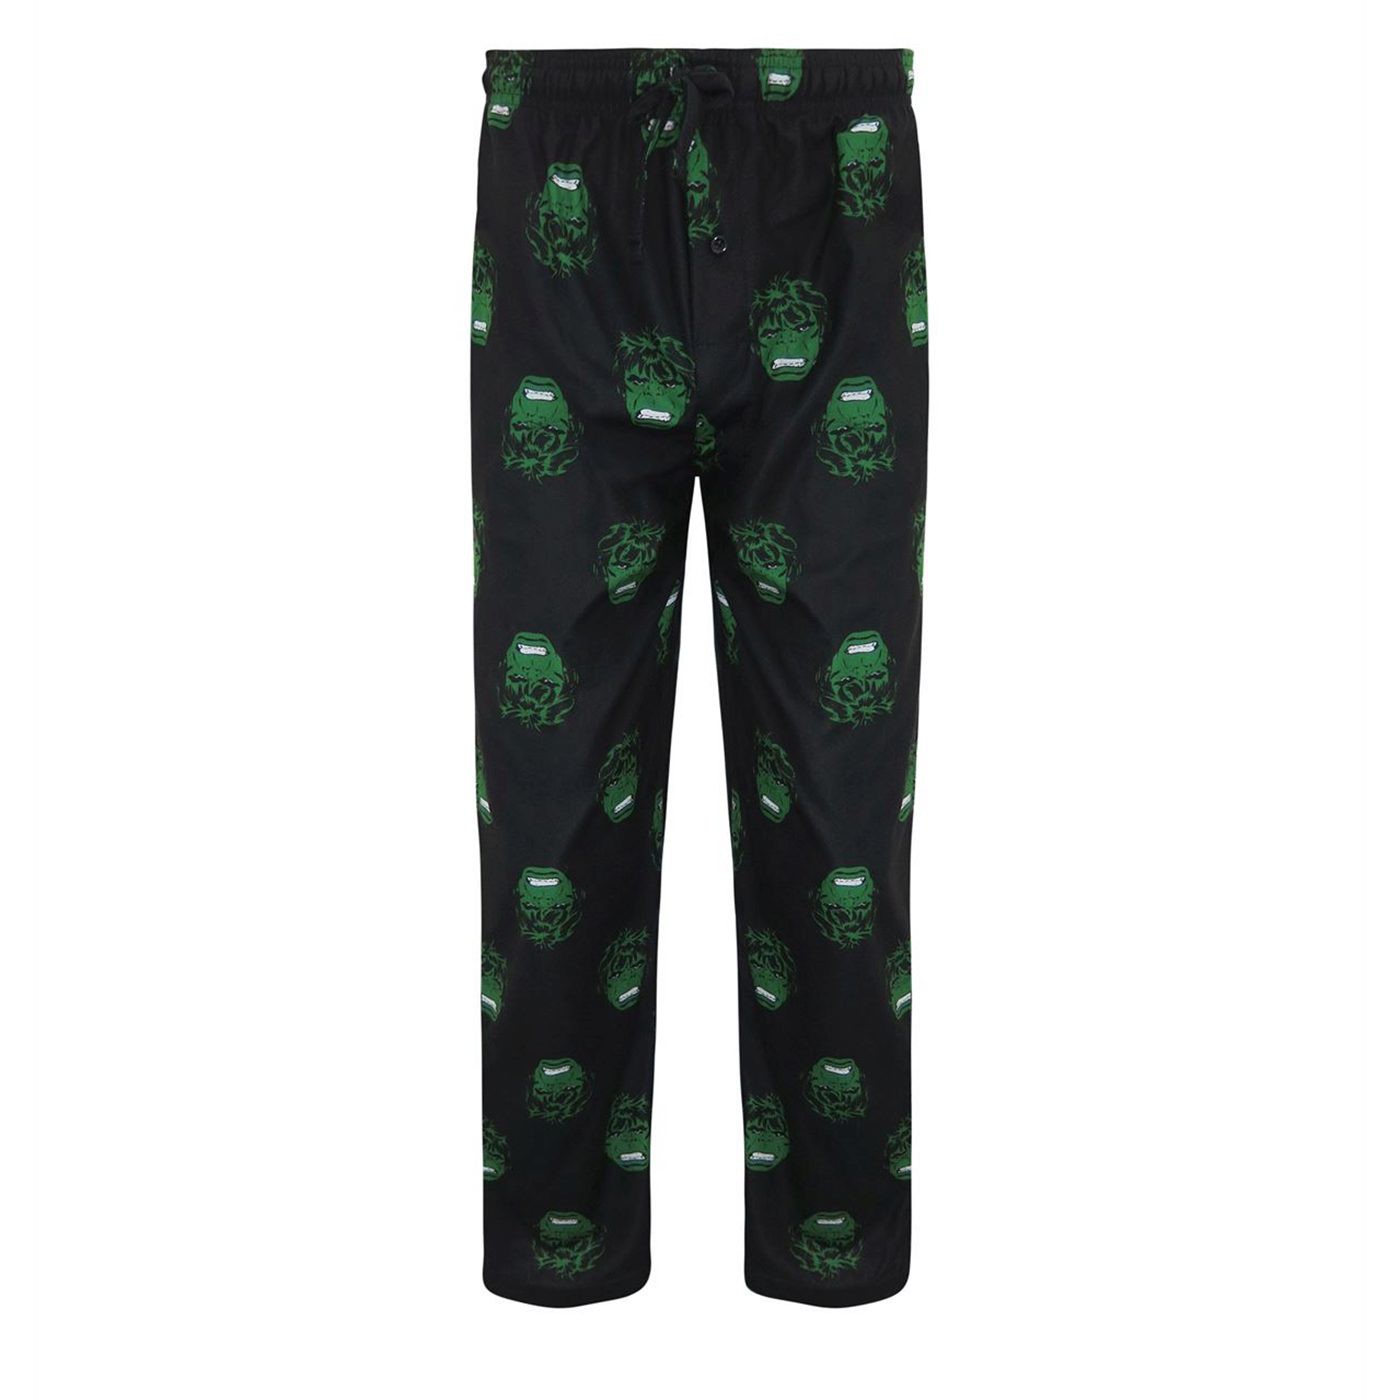 Hulk All-Over Print Pajama Set